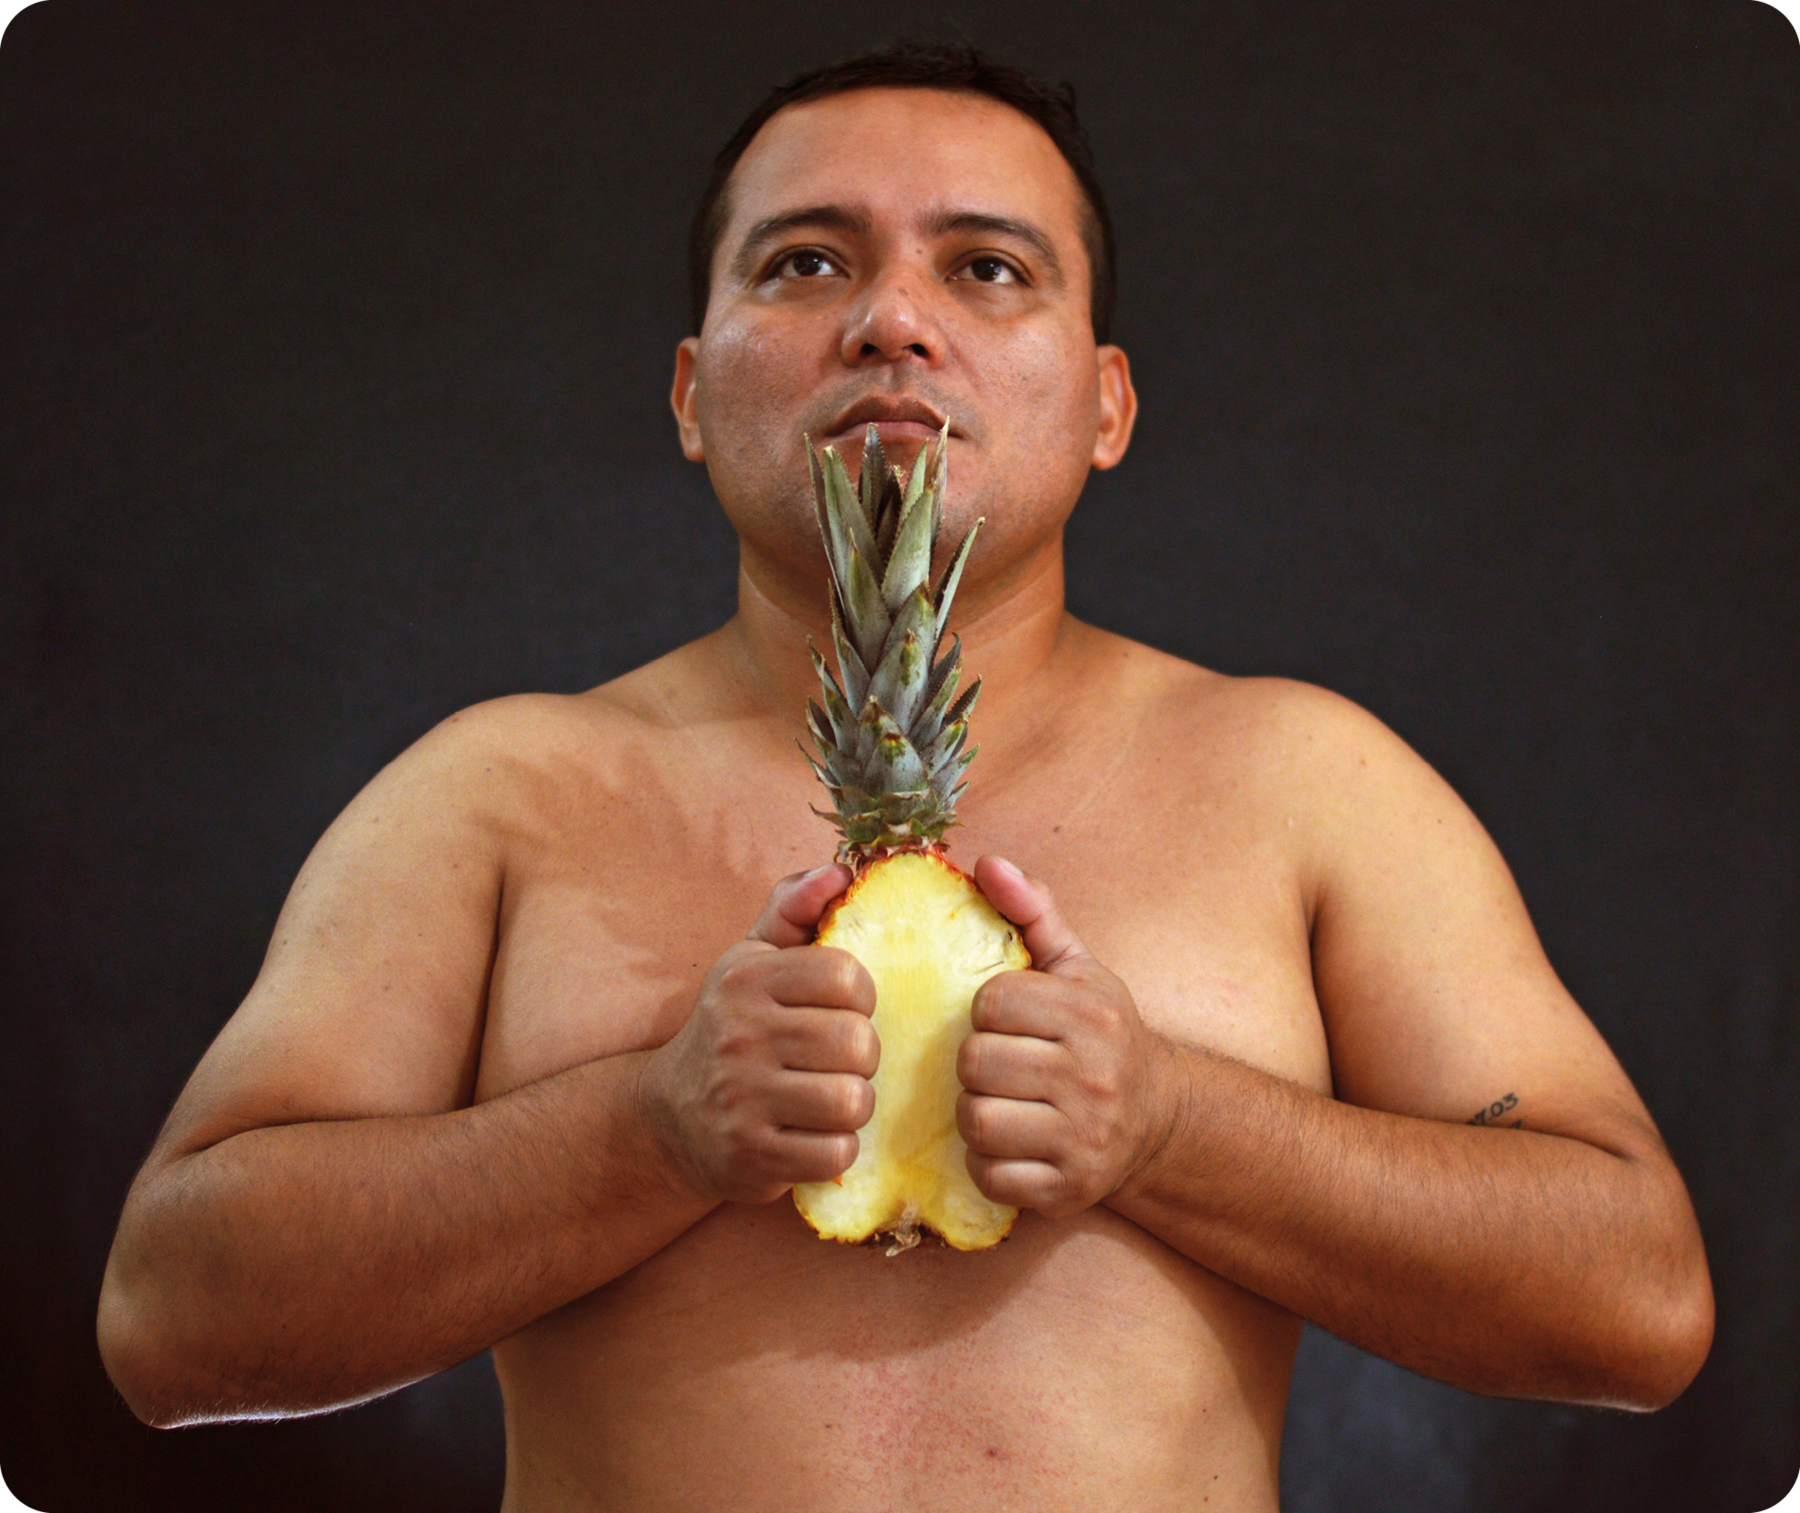 Fotografia. Retrato de um homem sem camisa visto da cintura para cima à frente de um fundo preto. Ele tem sobrancelhas e lábios grossos, nariz largo e segura um abacaxi cortado ao meio, o qual está com a polpa virada para frente.